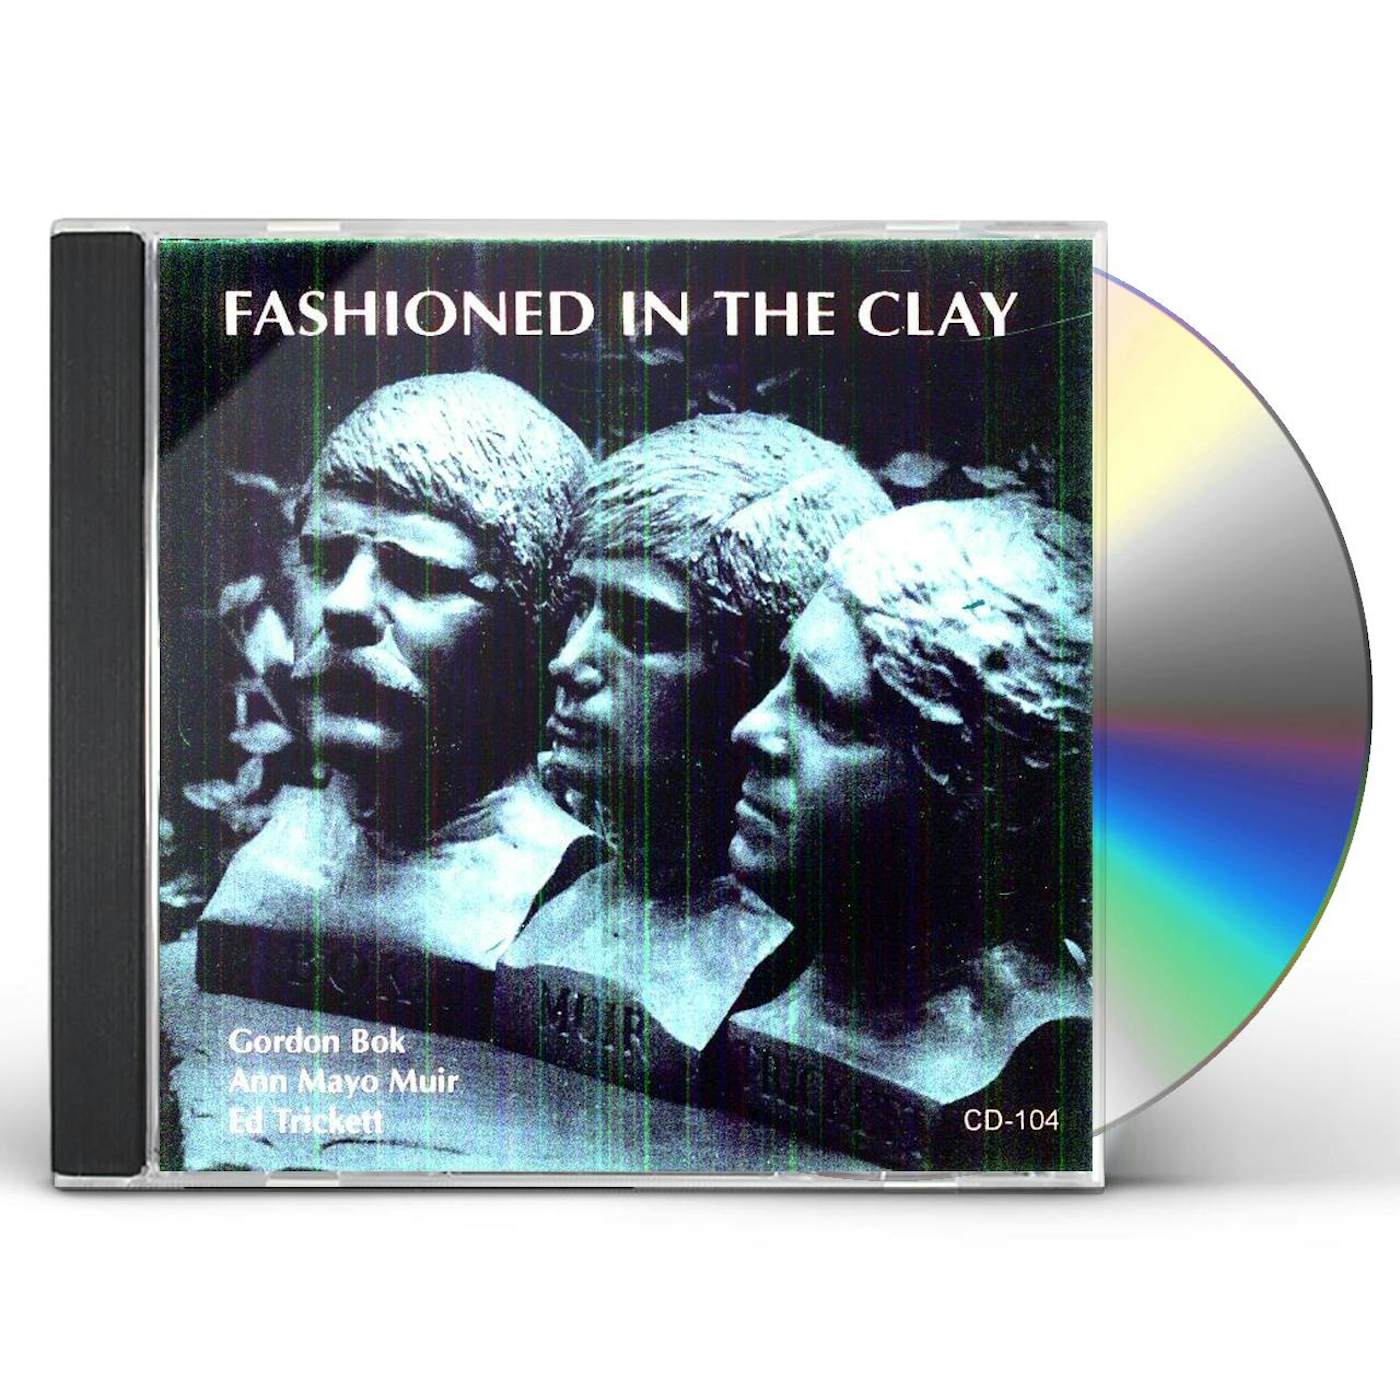 Gordon Bok, Ed Trickett, Ann Mayo Muir FASHIONED IN THE CLAY CD